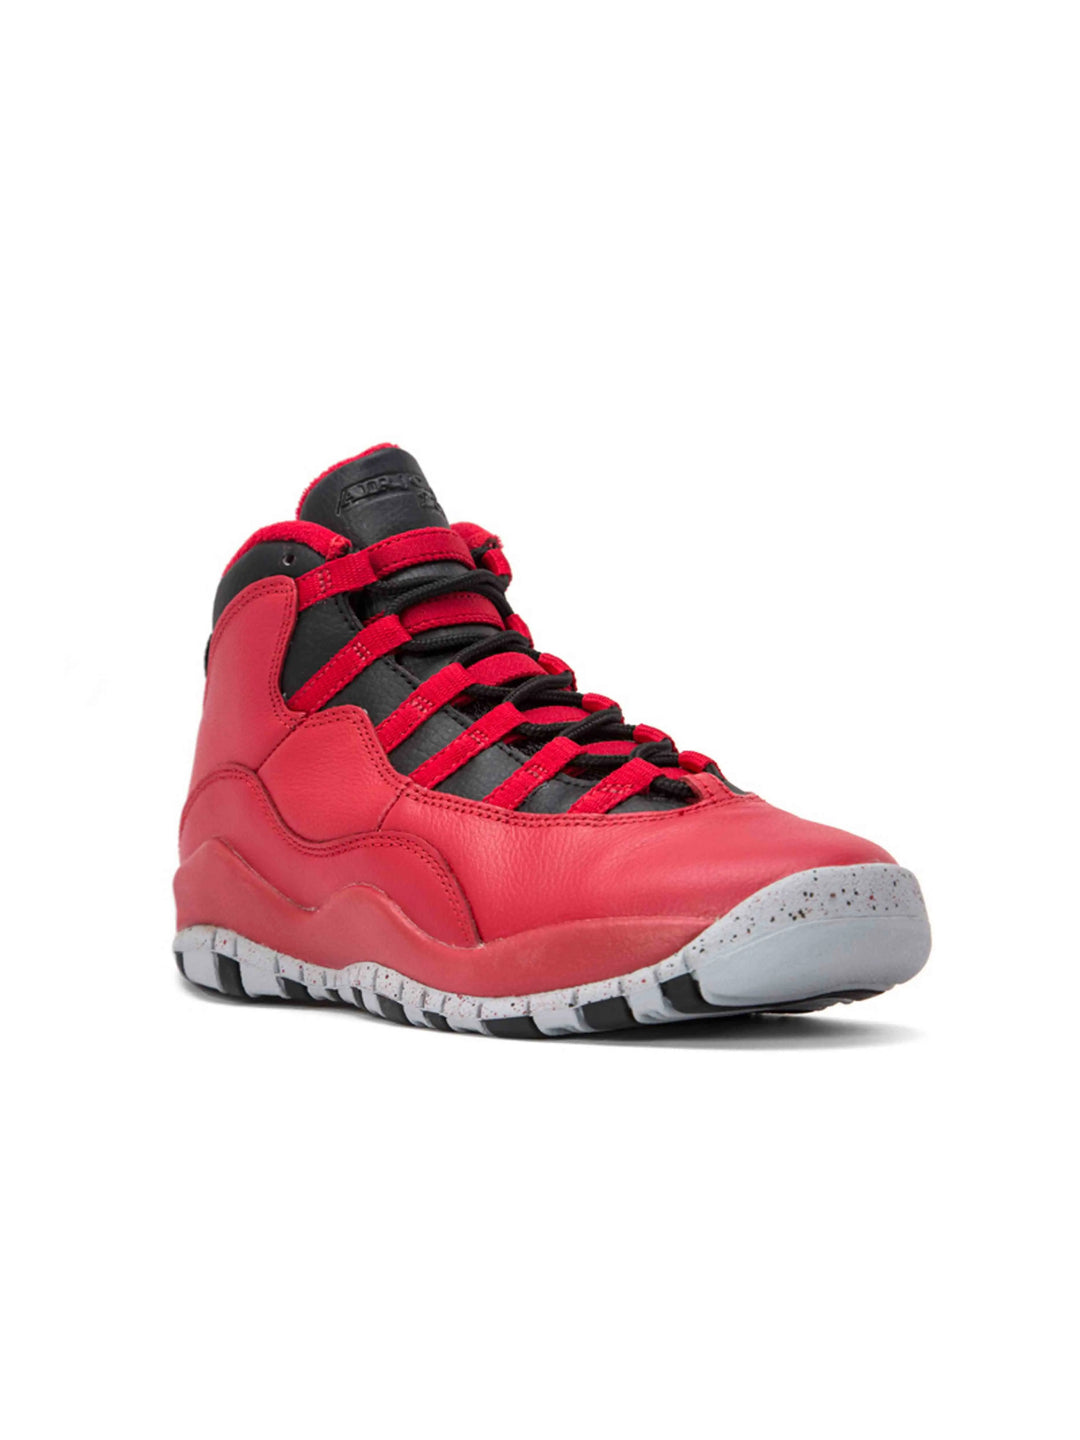 Nike Air Jordan 10 Retro Bulls Over Broadway (GS) Jordan Brand